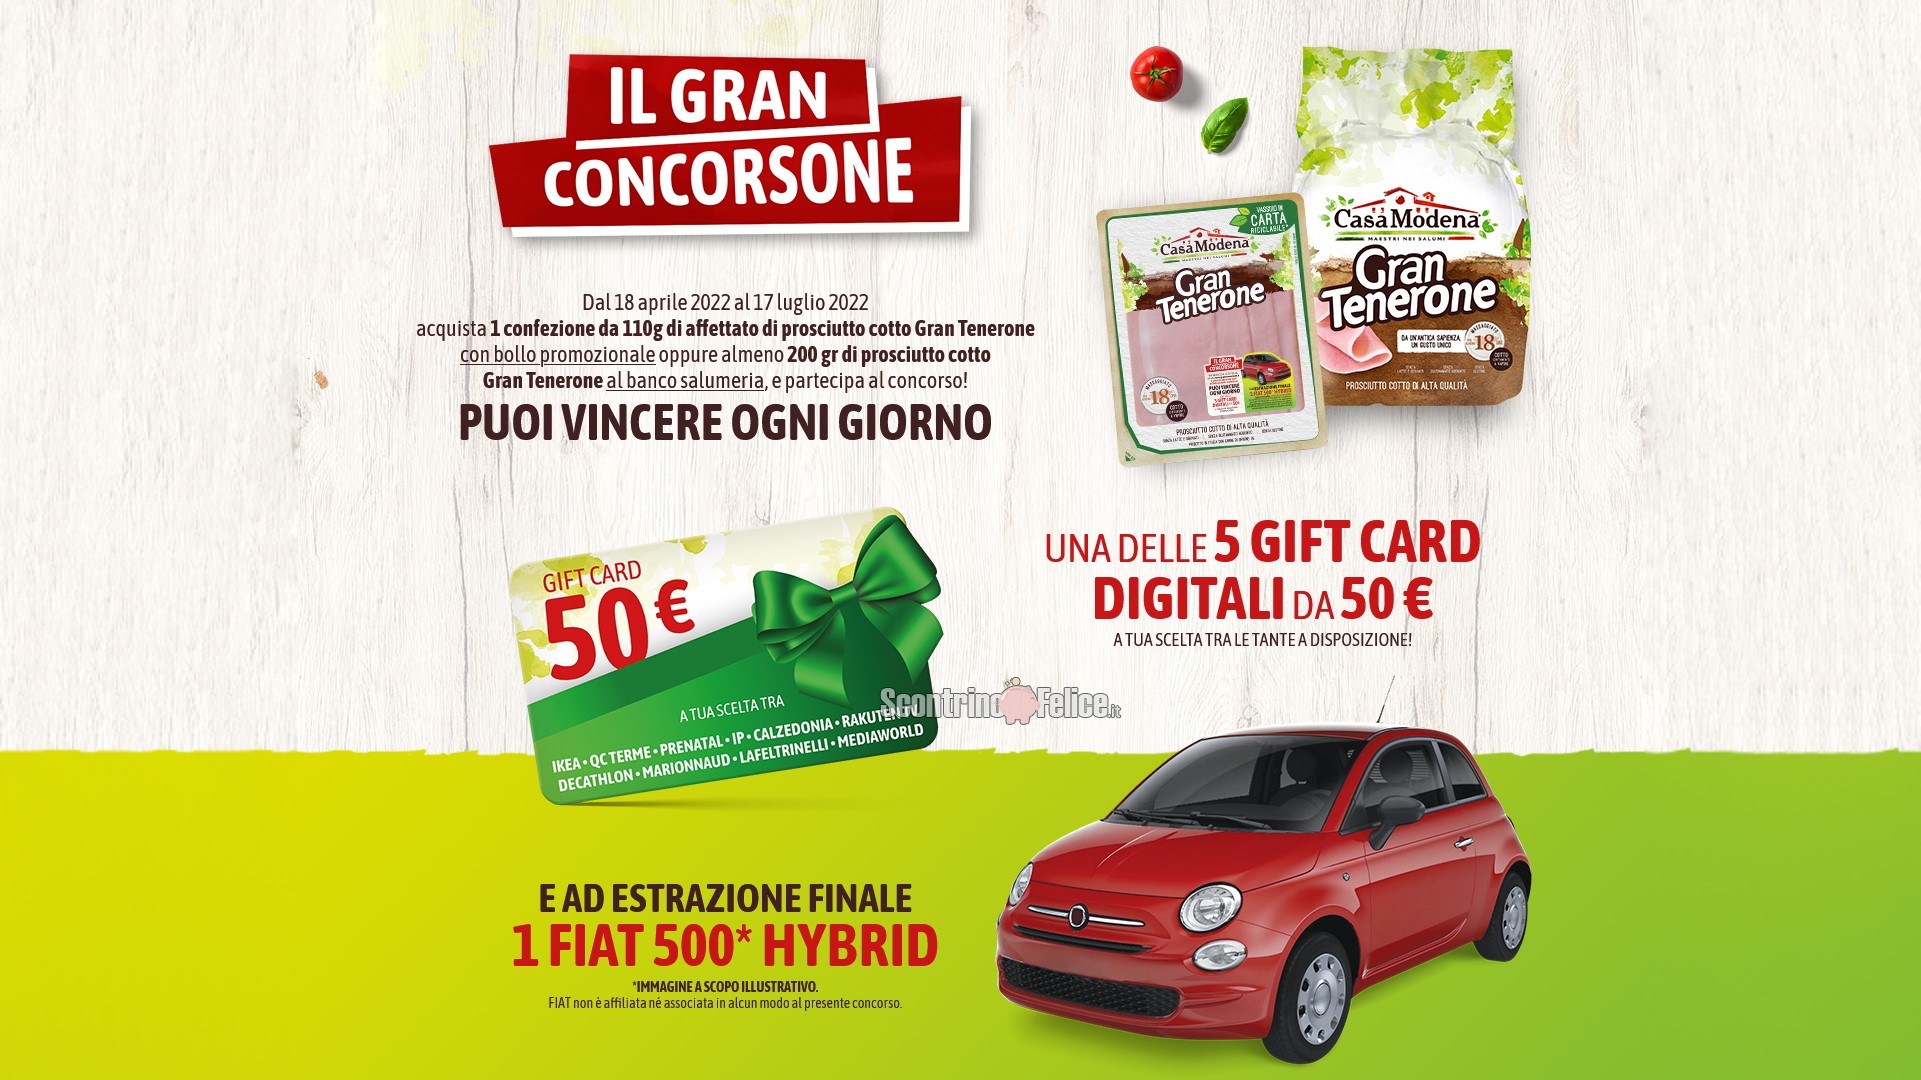 Concorso Casa Modena “Il Gran Concorsone Gran Tenerone”: vinci Gift Card a scelta da 50 euro e 1 Fiat 500 Hybrid MY21